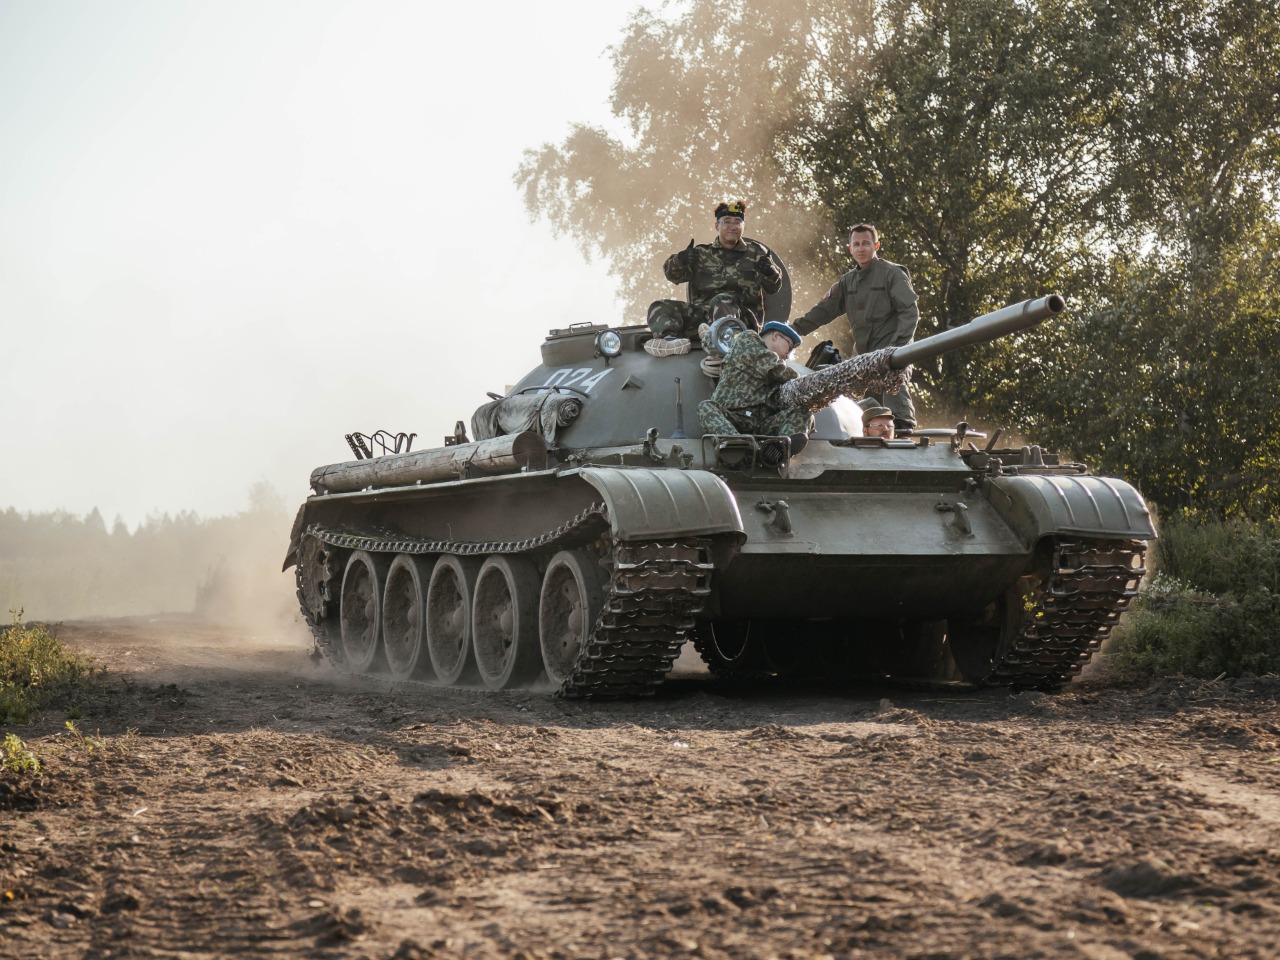 Экскурсия на танке Т-55 по историческим местам | Цена 44000₽, отзывы, описание экскурсии